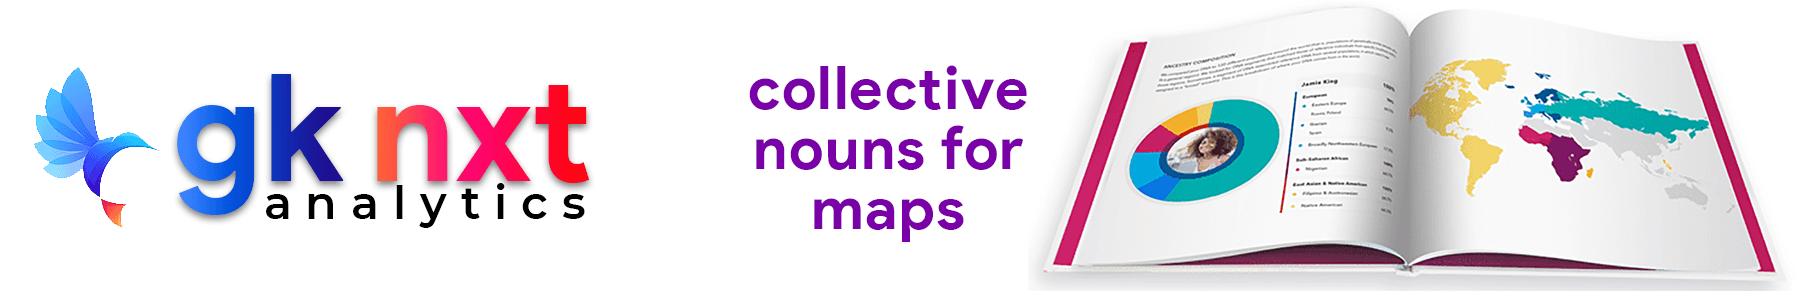 collective noun for maps